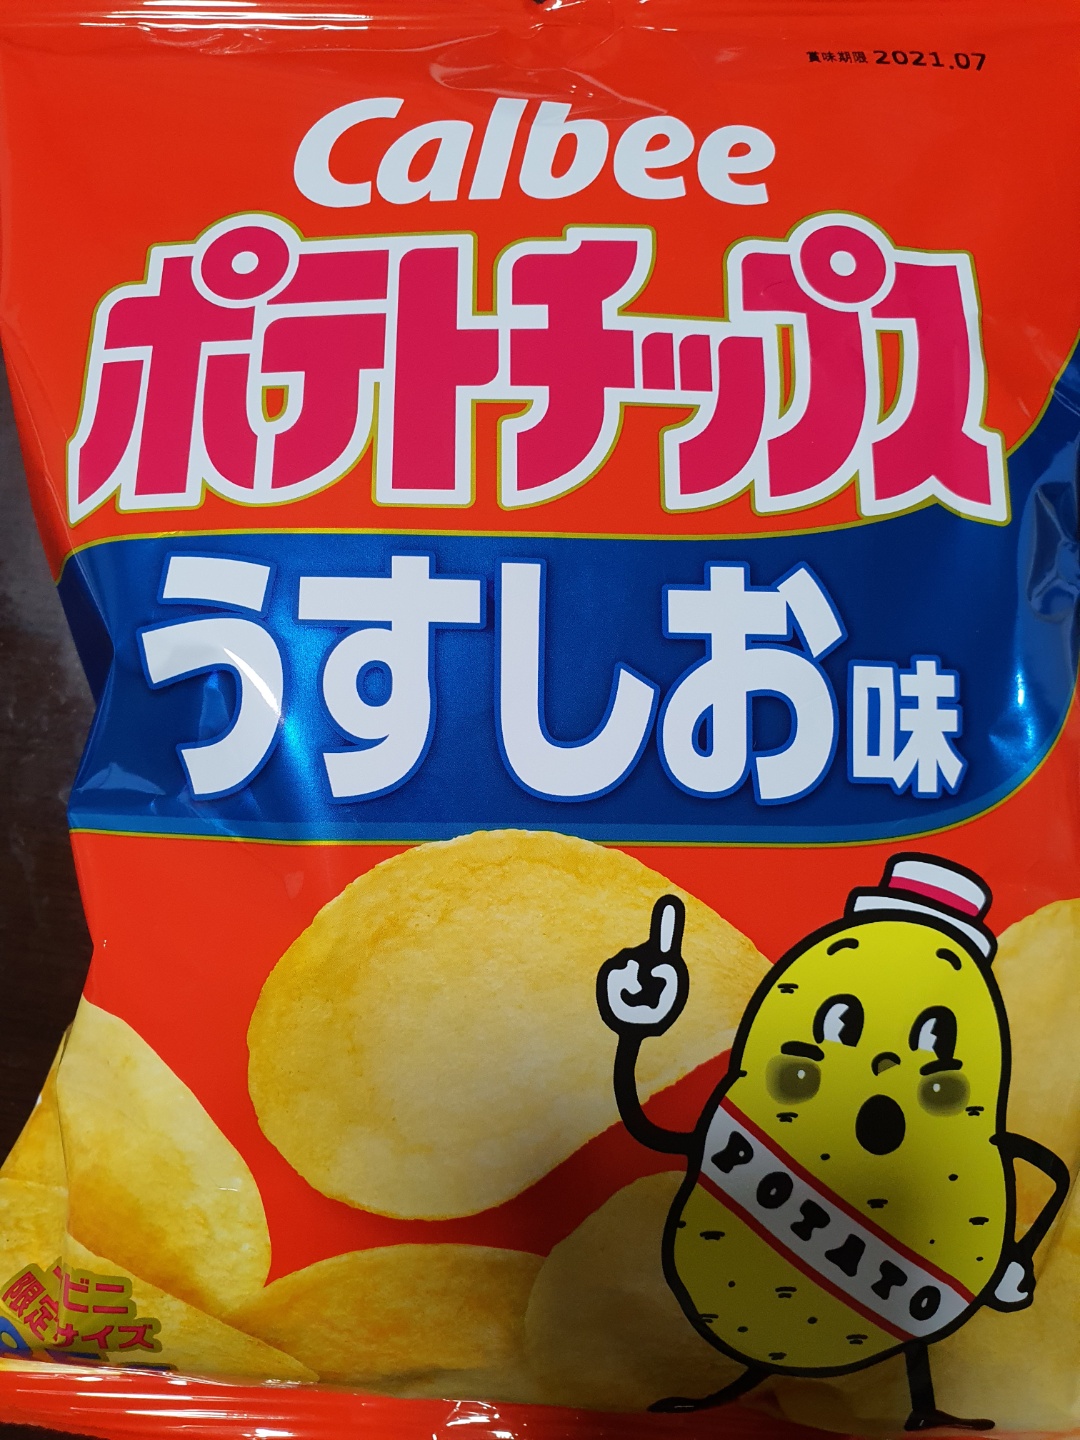 일본 인기 과자 1위 가루비 포테토칩스 우스시오아지